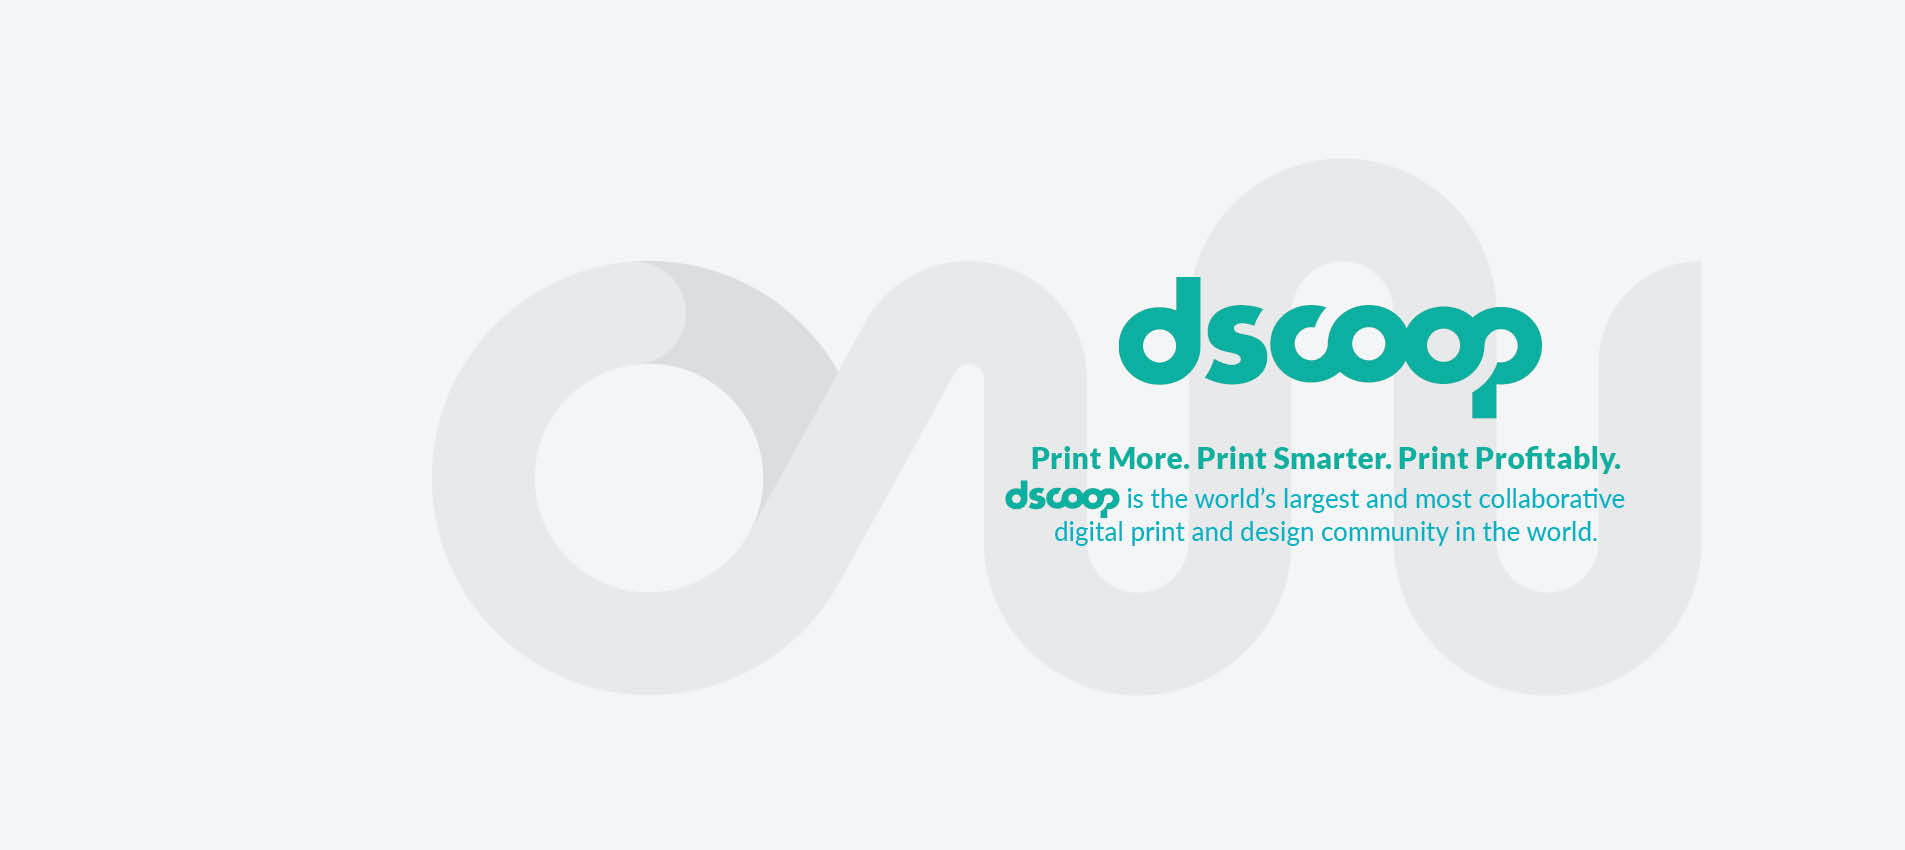 Con grande orgoglio, Contiweb diventa sponsor di Dscoop